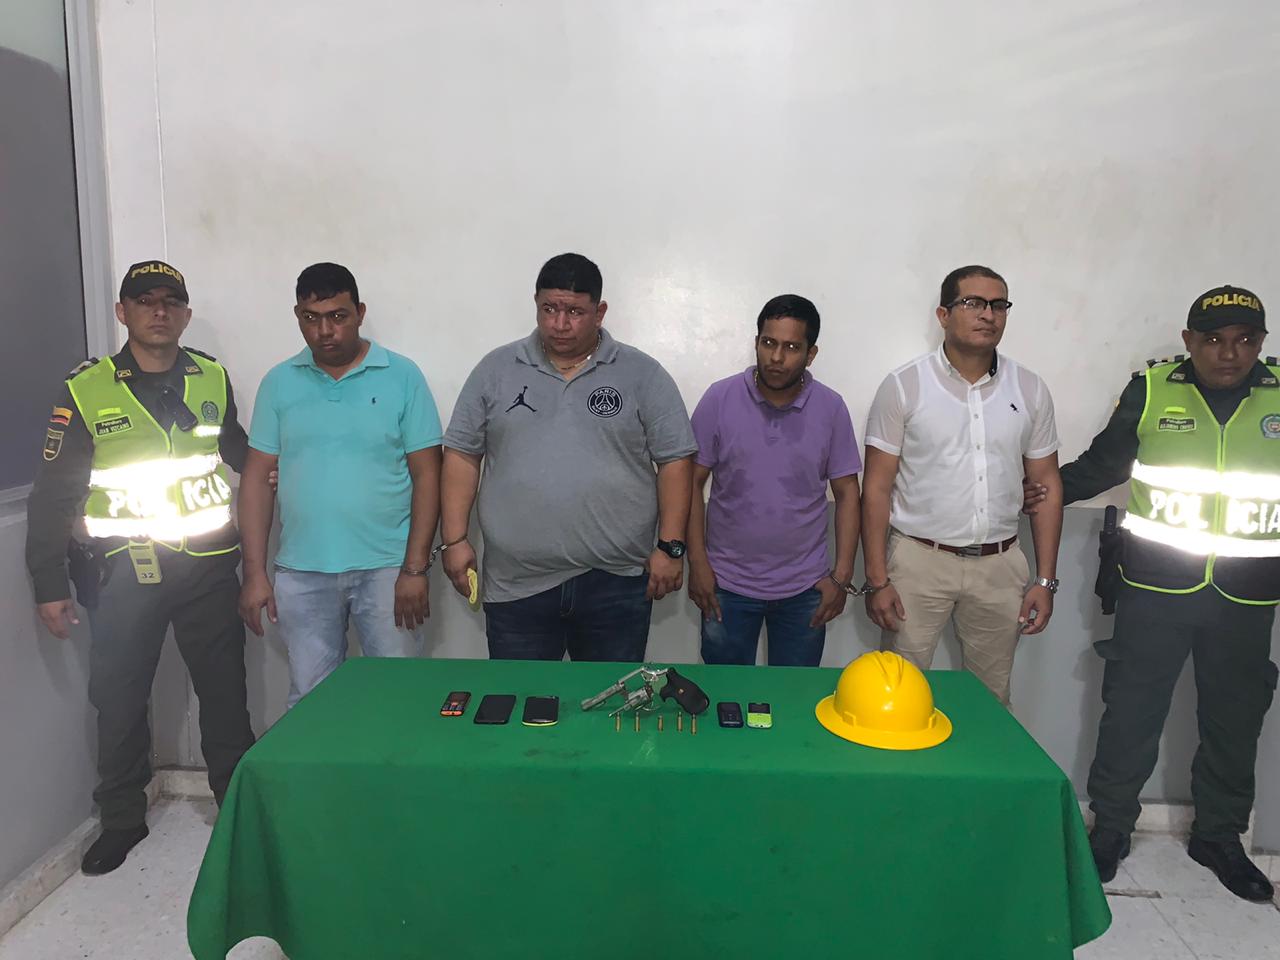 Unidades de la reacción bancaria de la metropolitana de Barranquilla logra la captura de 4 personas por porte ilegal de armas de fuego